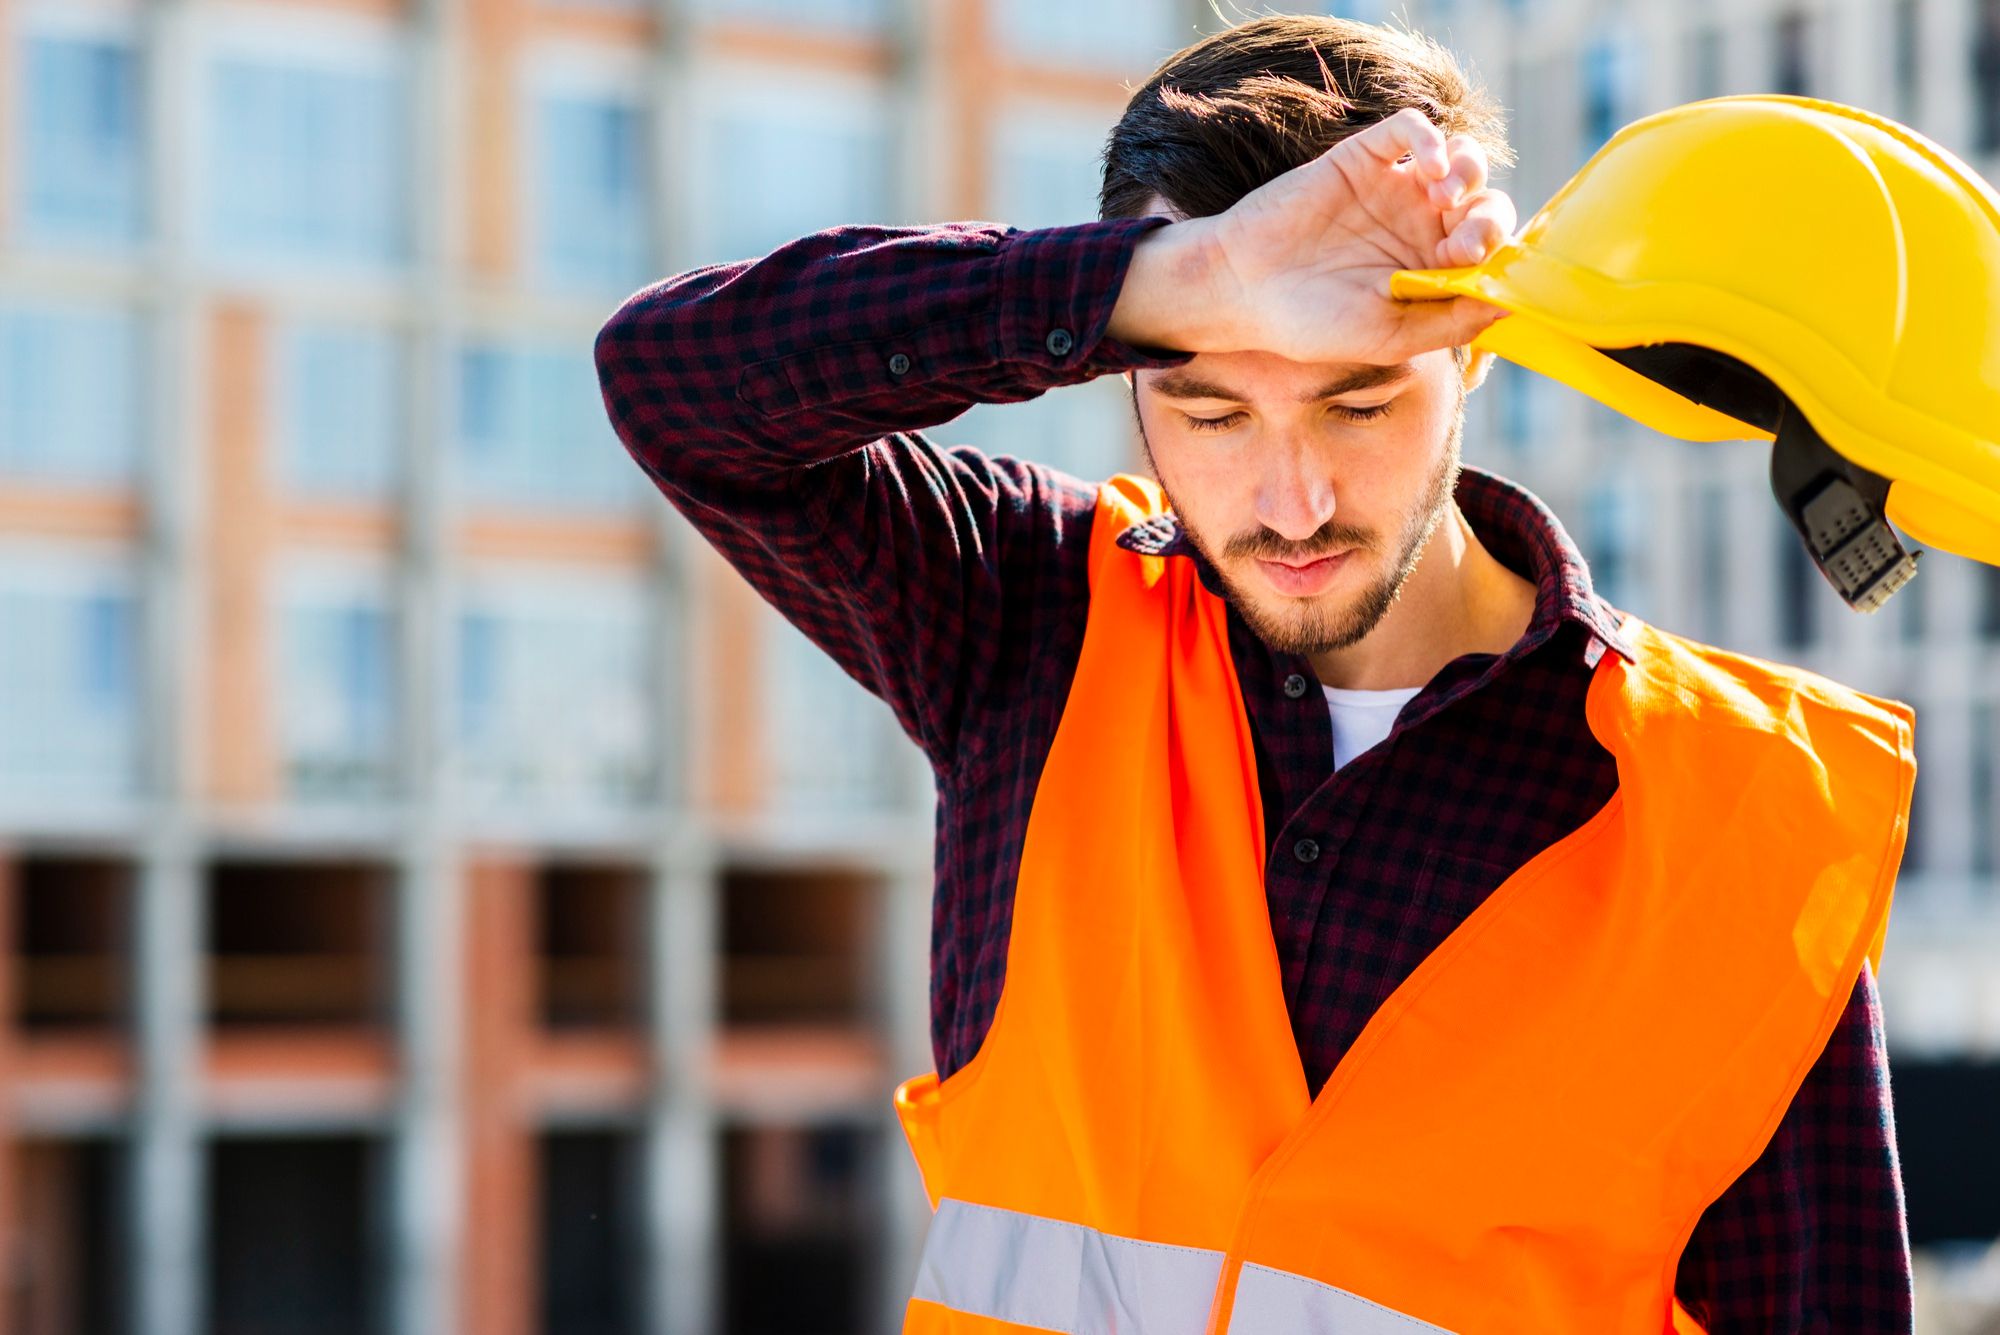 Un ouvrier du bâtiment fatigué retire son casque de chantier pour s'essuyer le front.